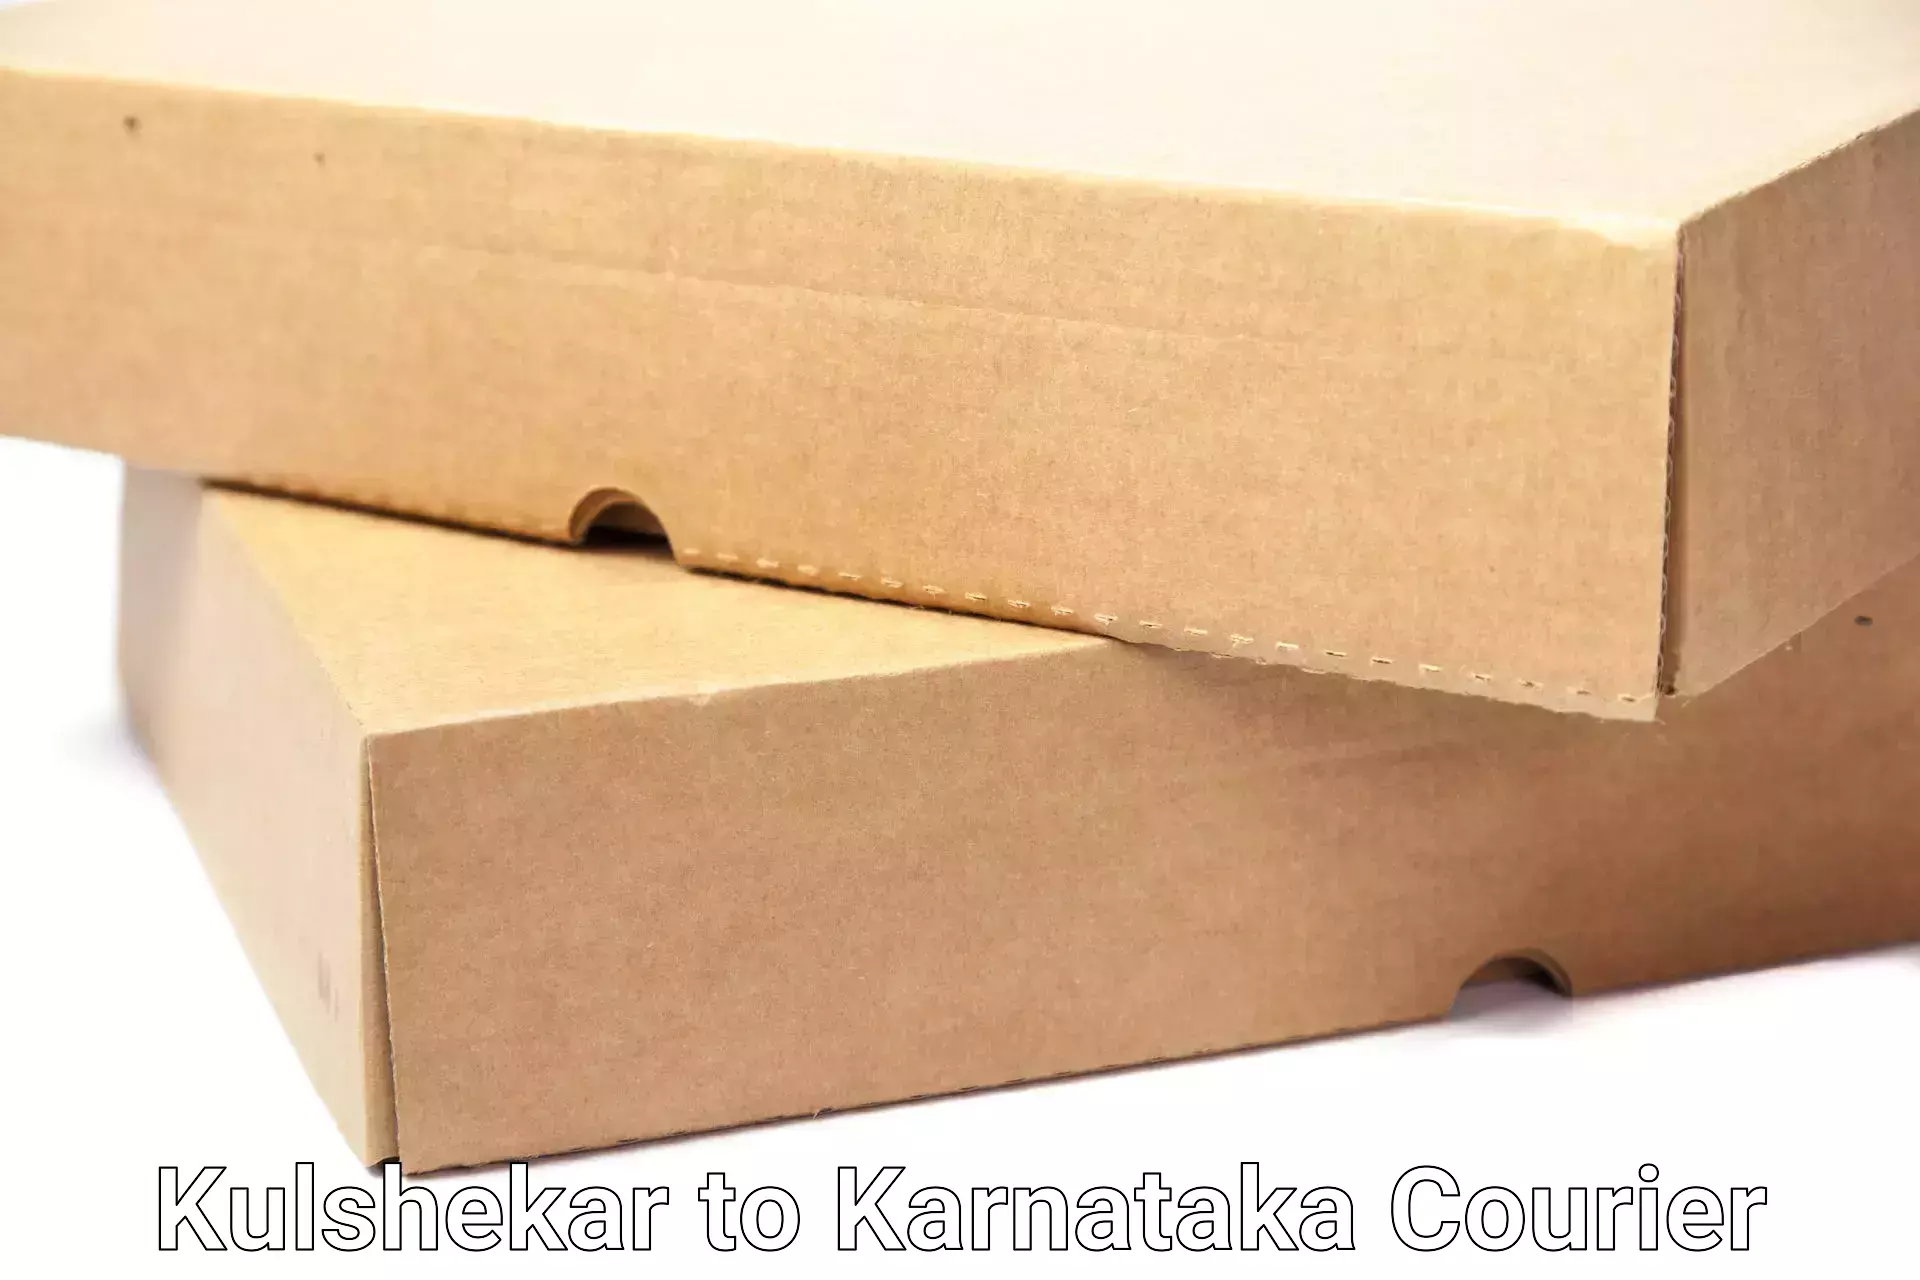 Professional movers and packers Kulshekar to Ramanathapura